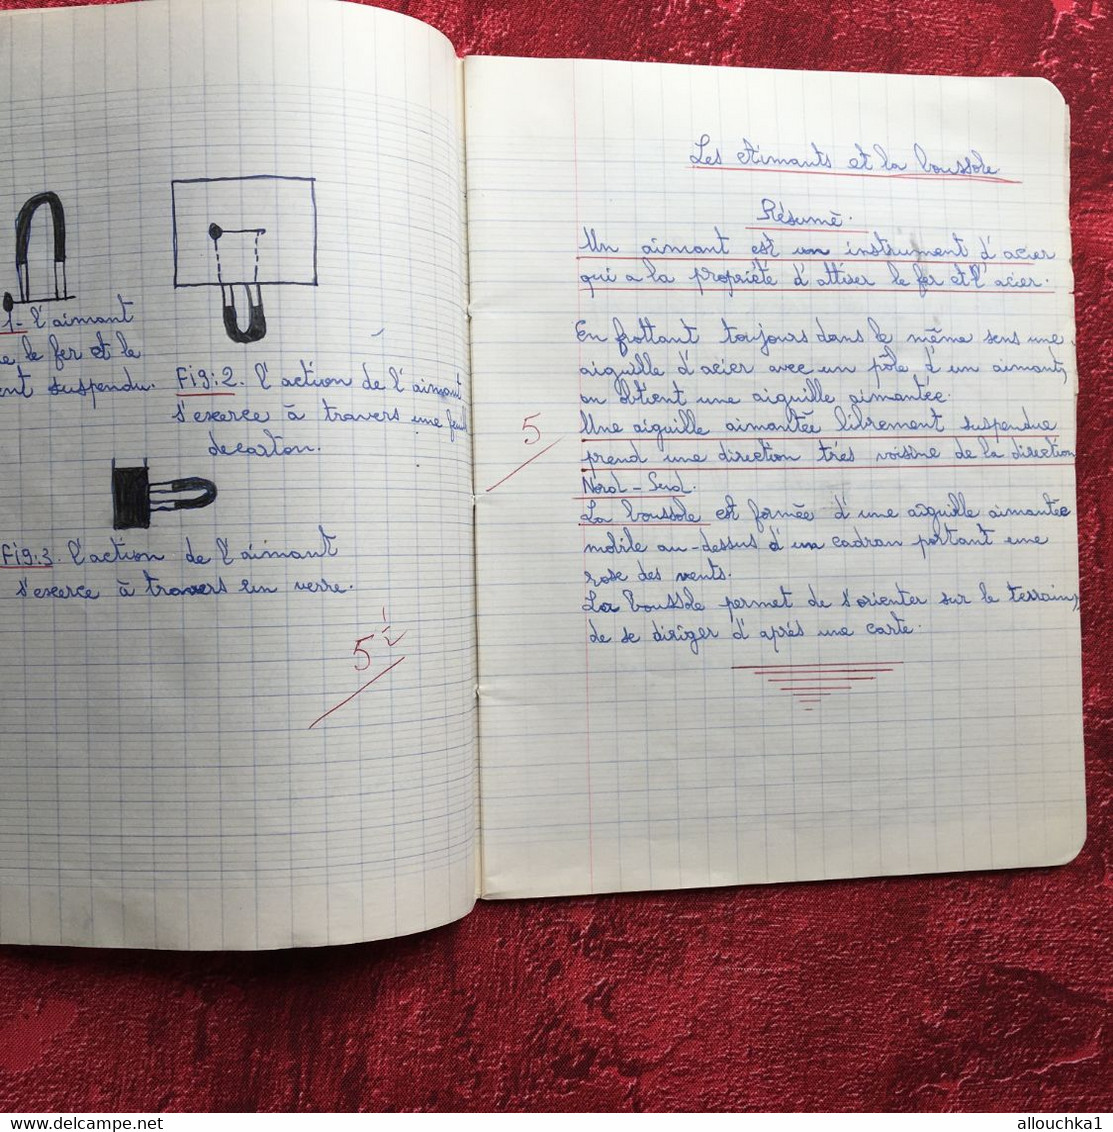 Cahier Ecole communale de La Loubière Marseille 5é-Cahier d'écolier Sciences naturelles Texte écriture au porte plume